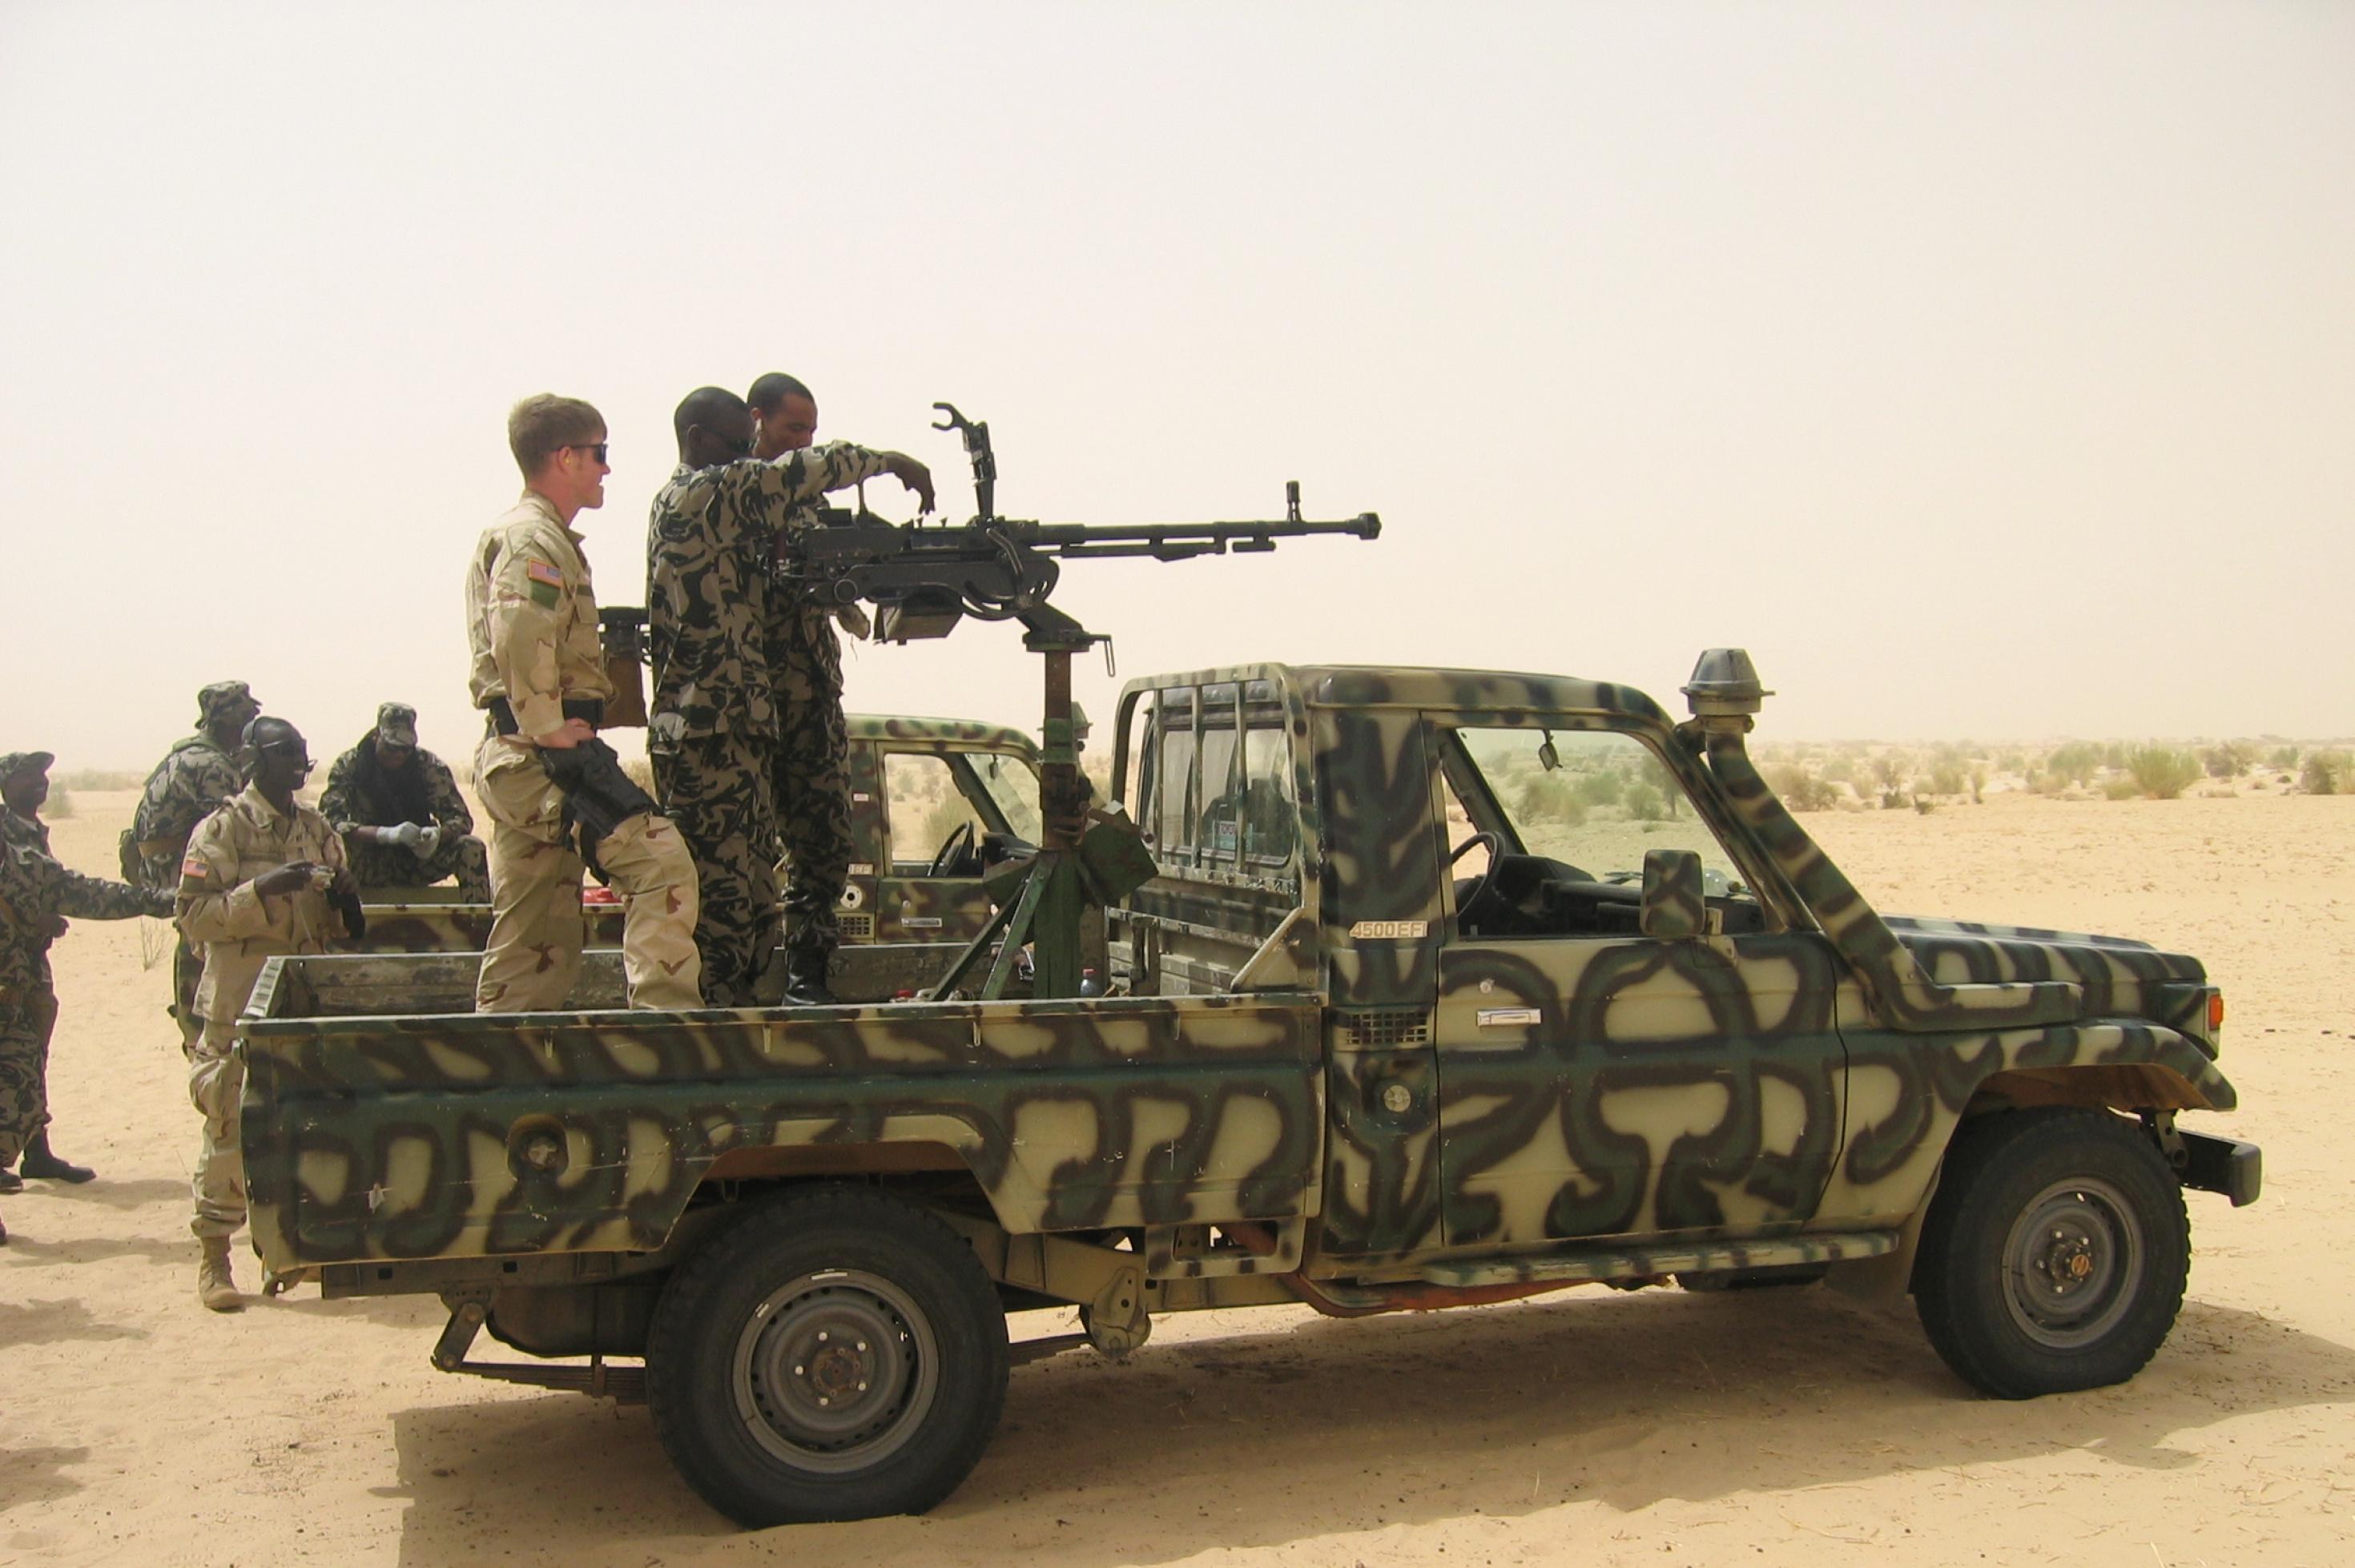 Zu sehen ist ein Pick-Up in militärgrün, in Tarnfarben. Auf der Ladefläche ist ein Geschütz aufmontiert, die Luft ist von Sand verhangen. Am Geschütz stehen US-amerikanische und malische Soldaten – offensichtlich eine Trainingssituation.